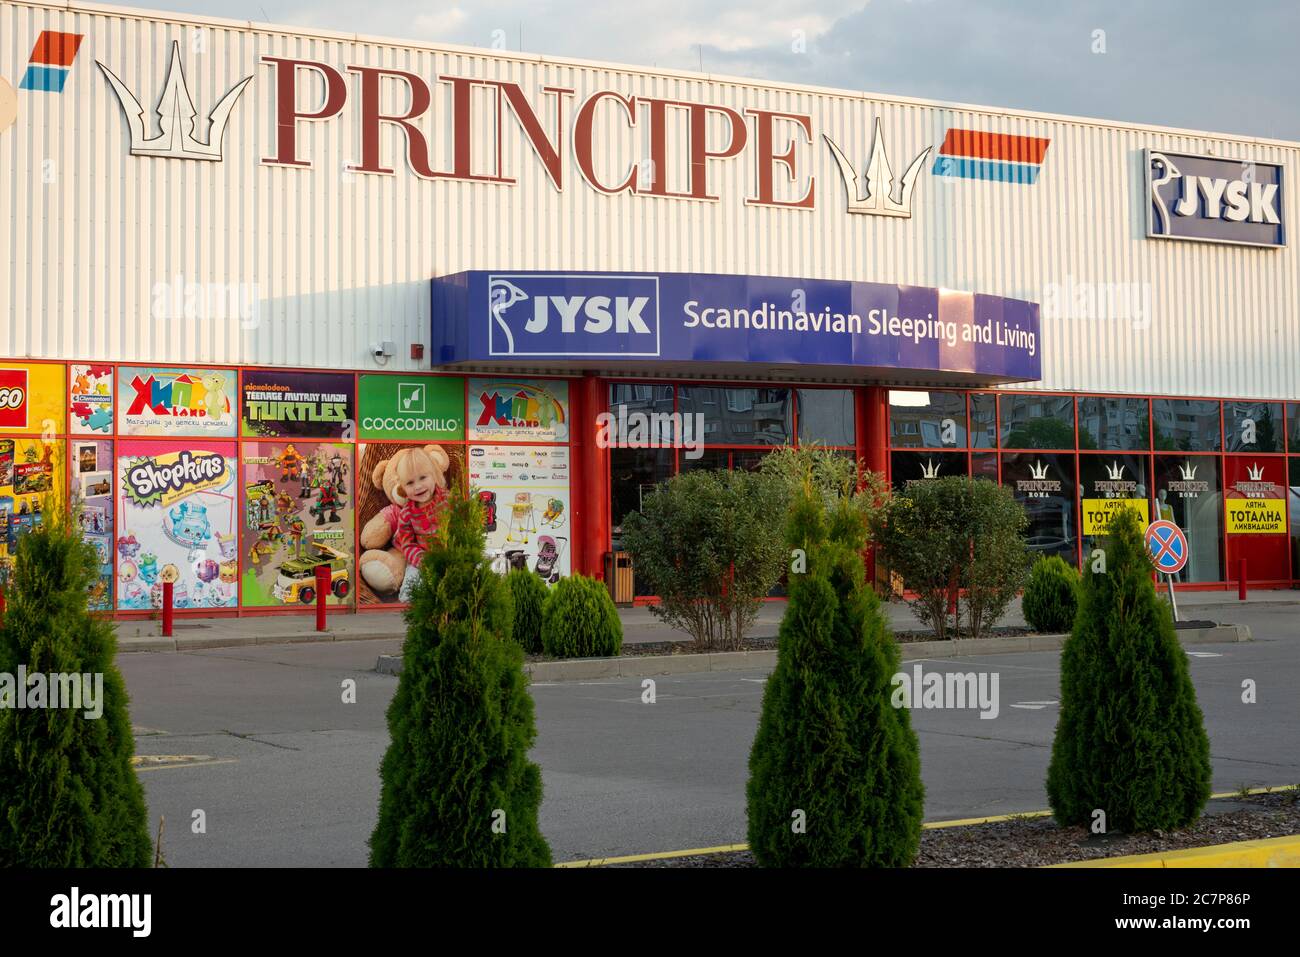 Principe logo et JYSK scandinave dormir et vivre maison ameublement magasin façade avant à Sofia Bulgarie Banque D'Images